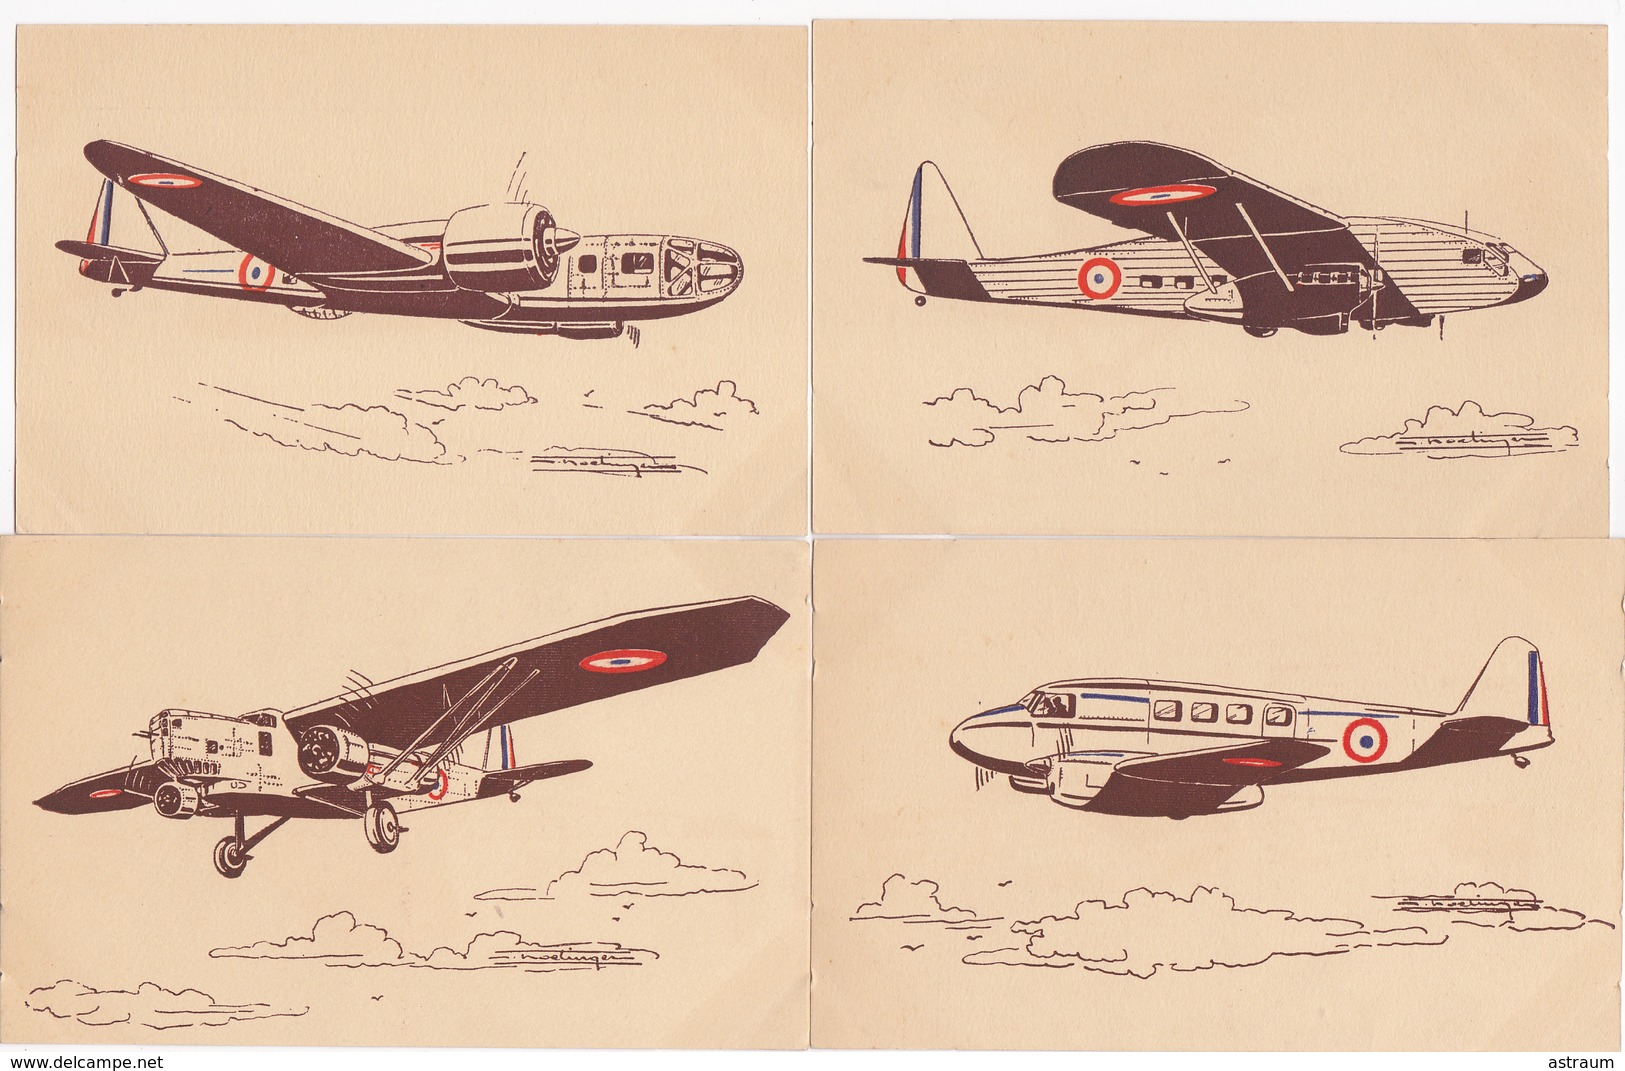 serie complete 36 cpa-aviation de guerre ( 39 - 45 )- illustrateur a identifier-correspondance entiere -aulnat  (63)